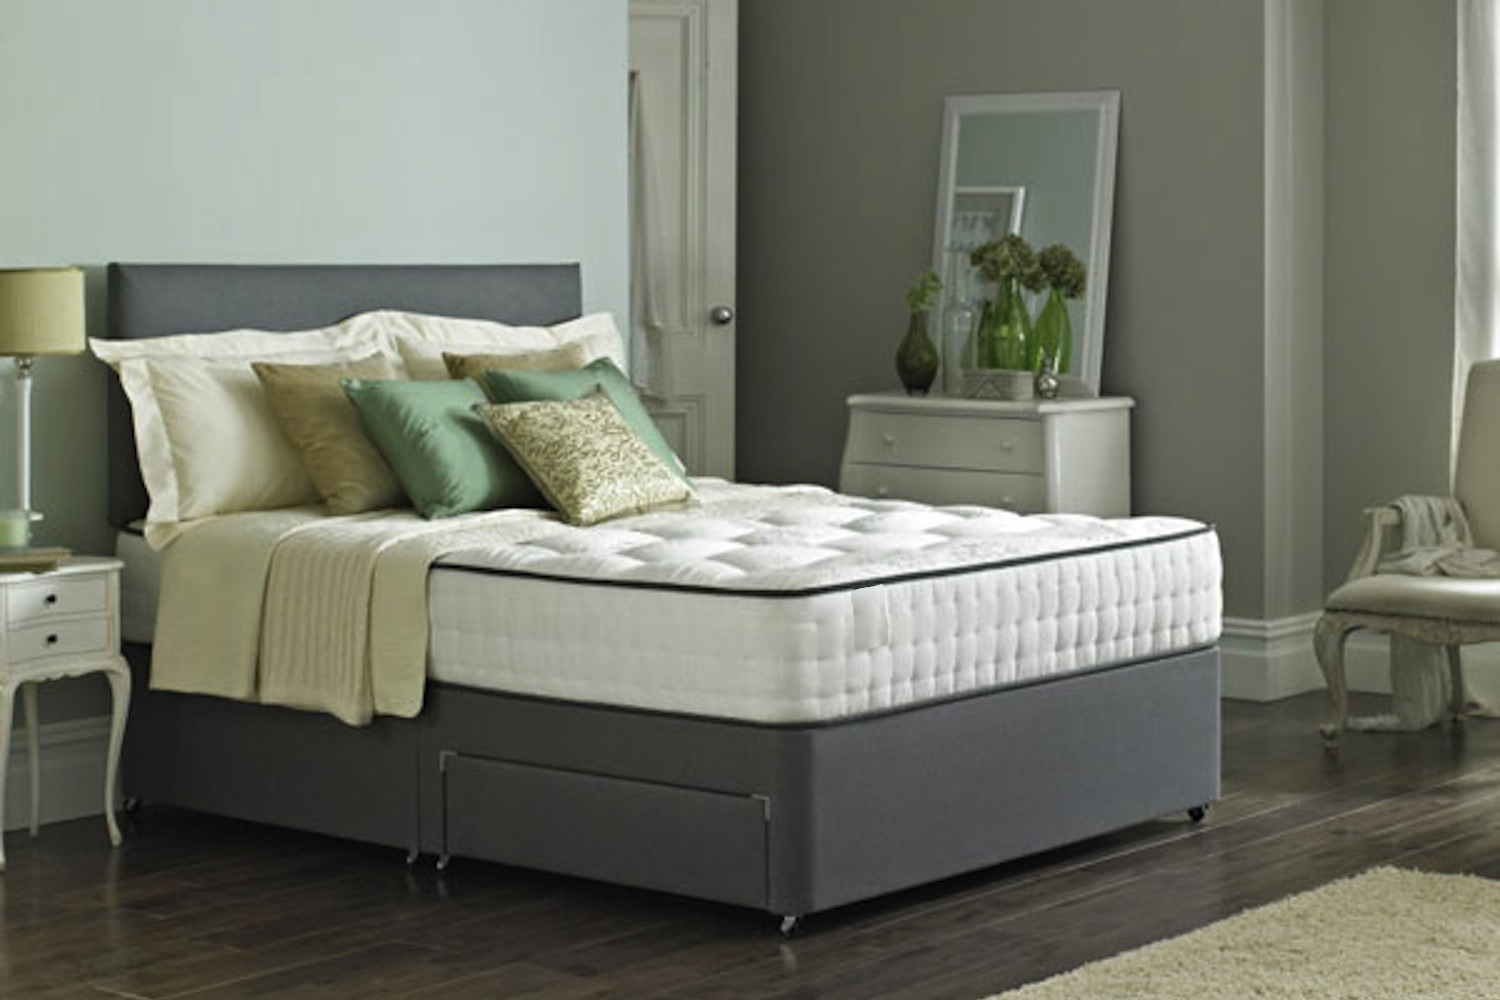 divan beds with mattress